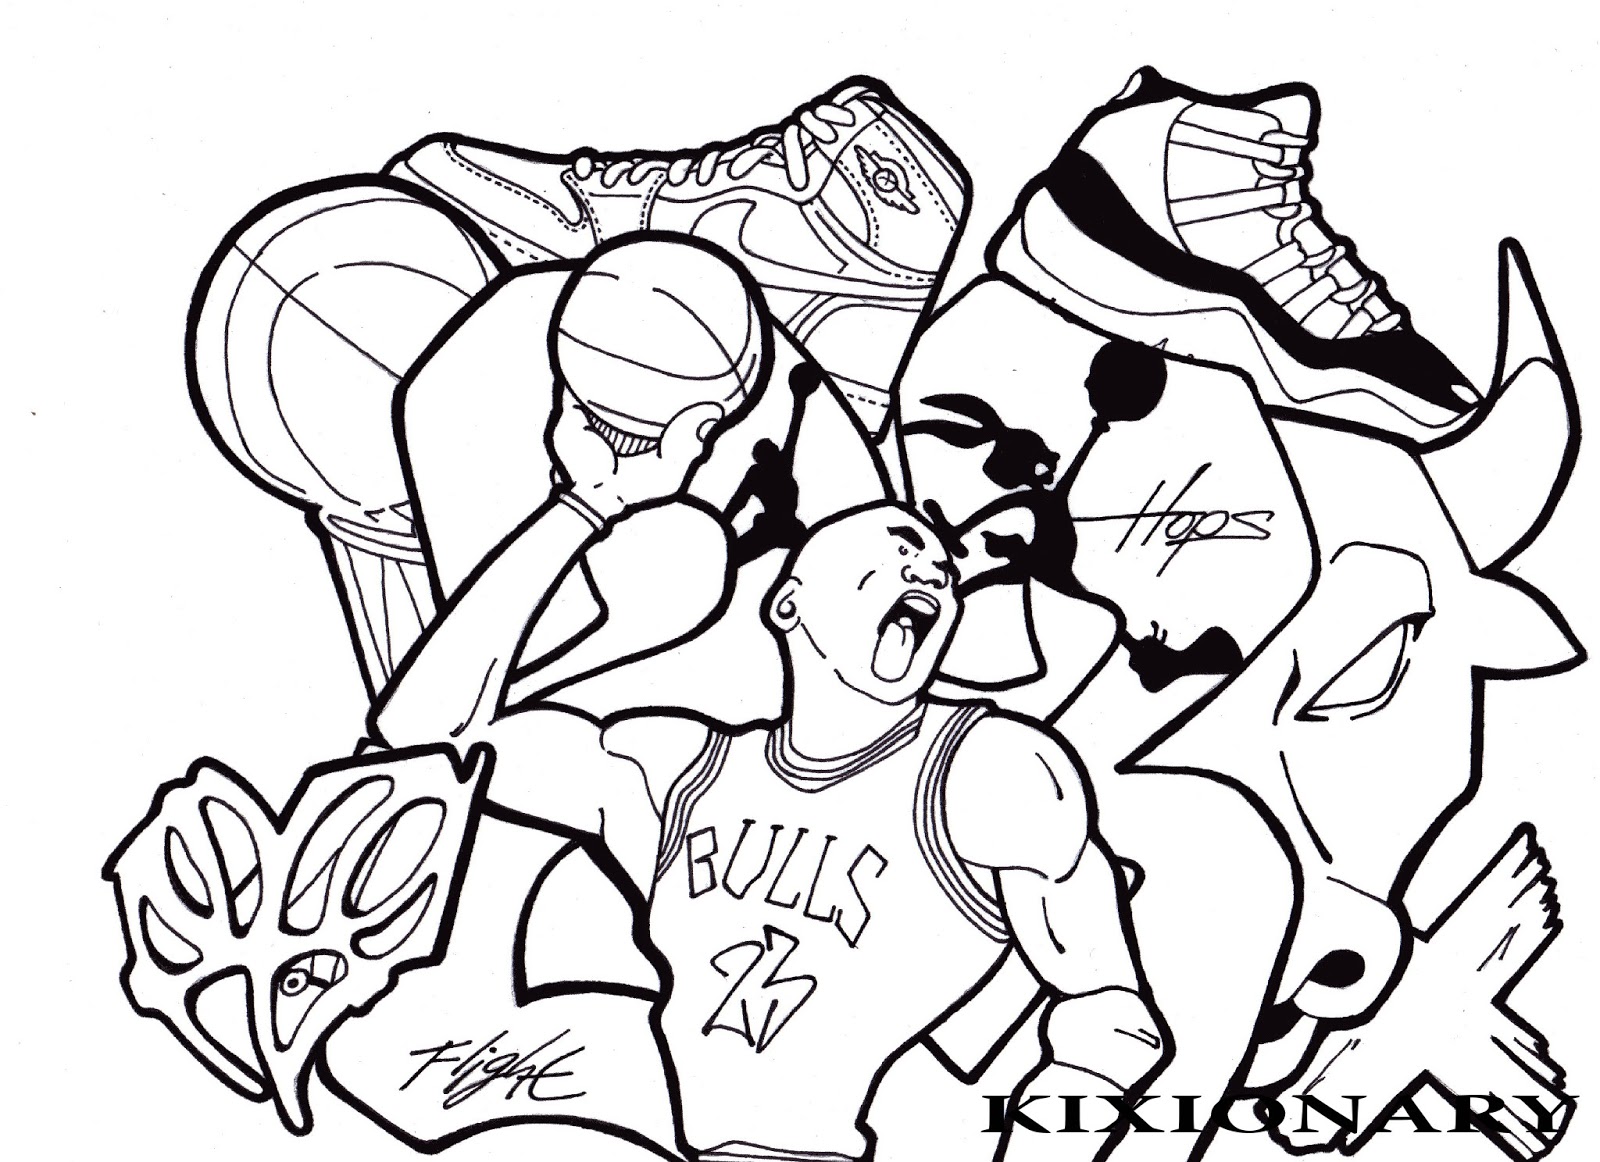 Michael Jordan Coloring Pages at GetDrawings | Free download